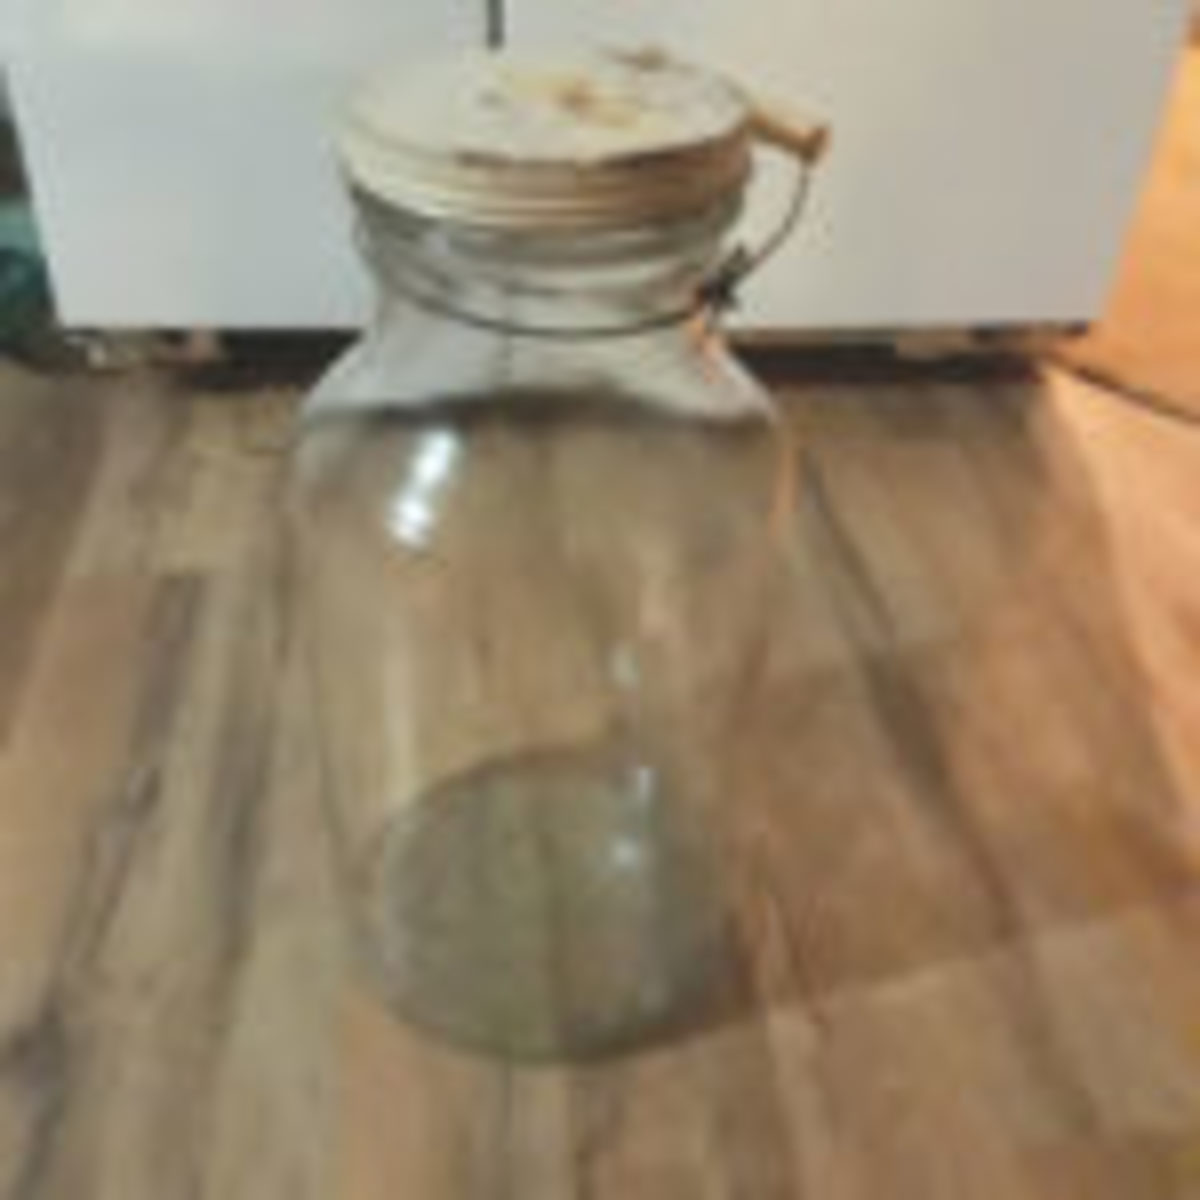 Vintage pickle jar with bail handle